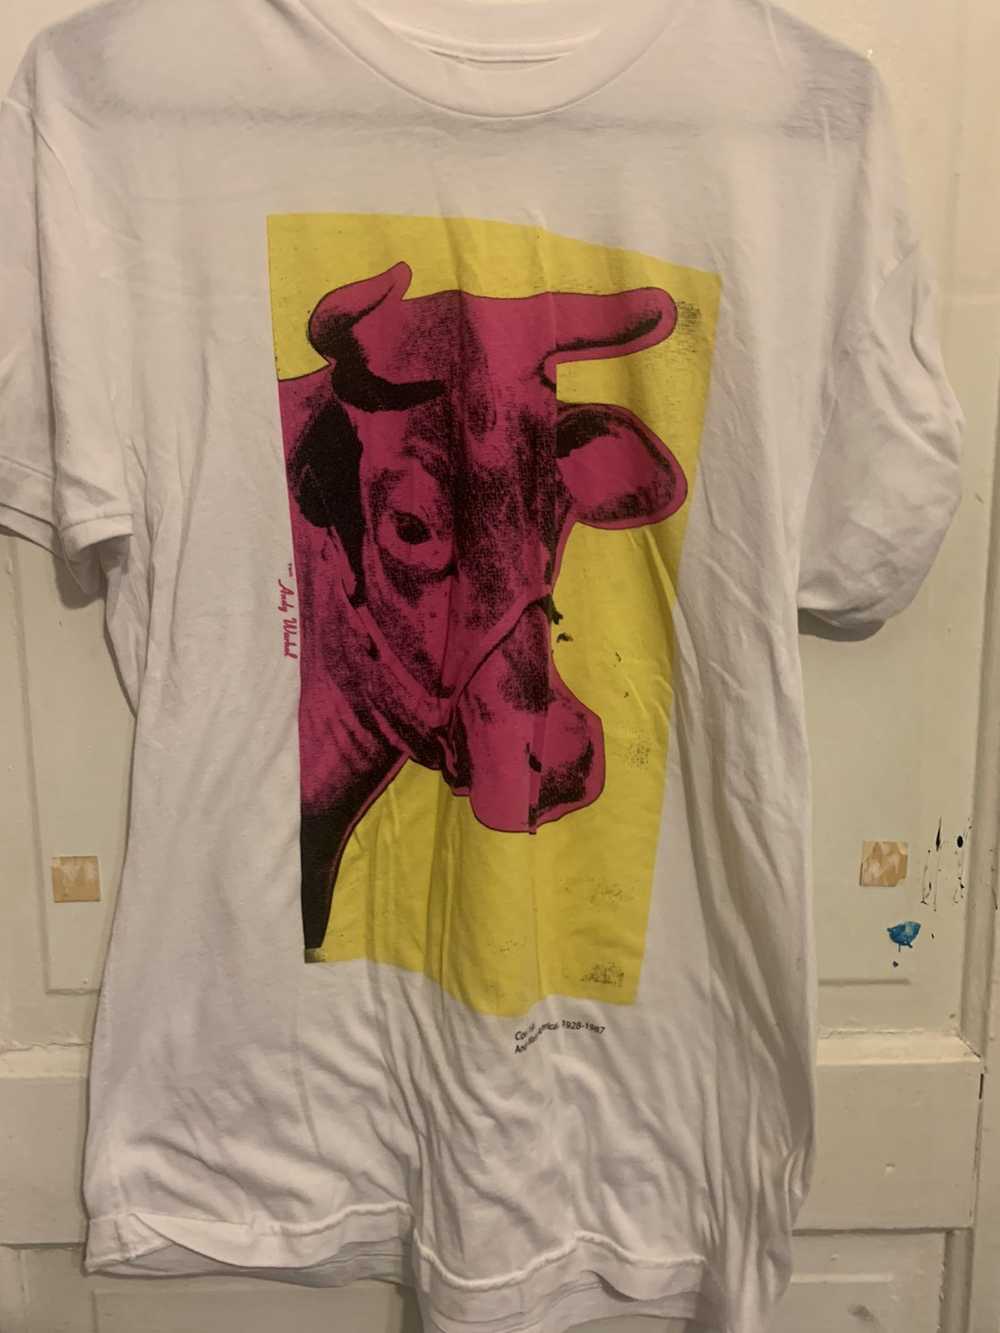 Andy Warhol × Vintage Andy Warhol “Cow” Tee - image 1